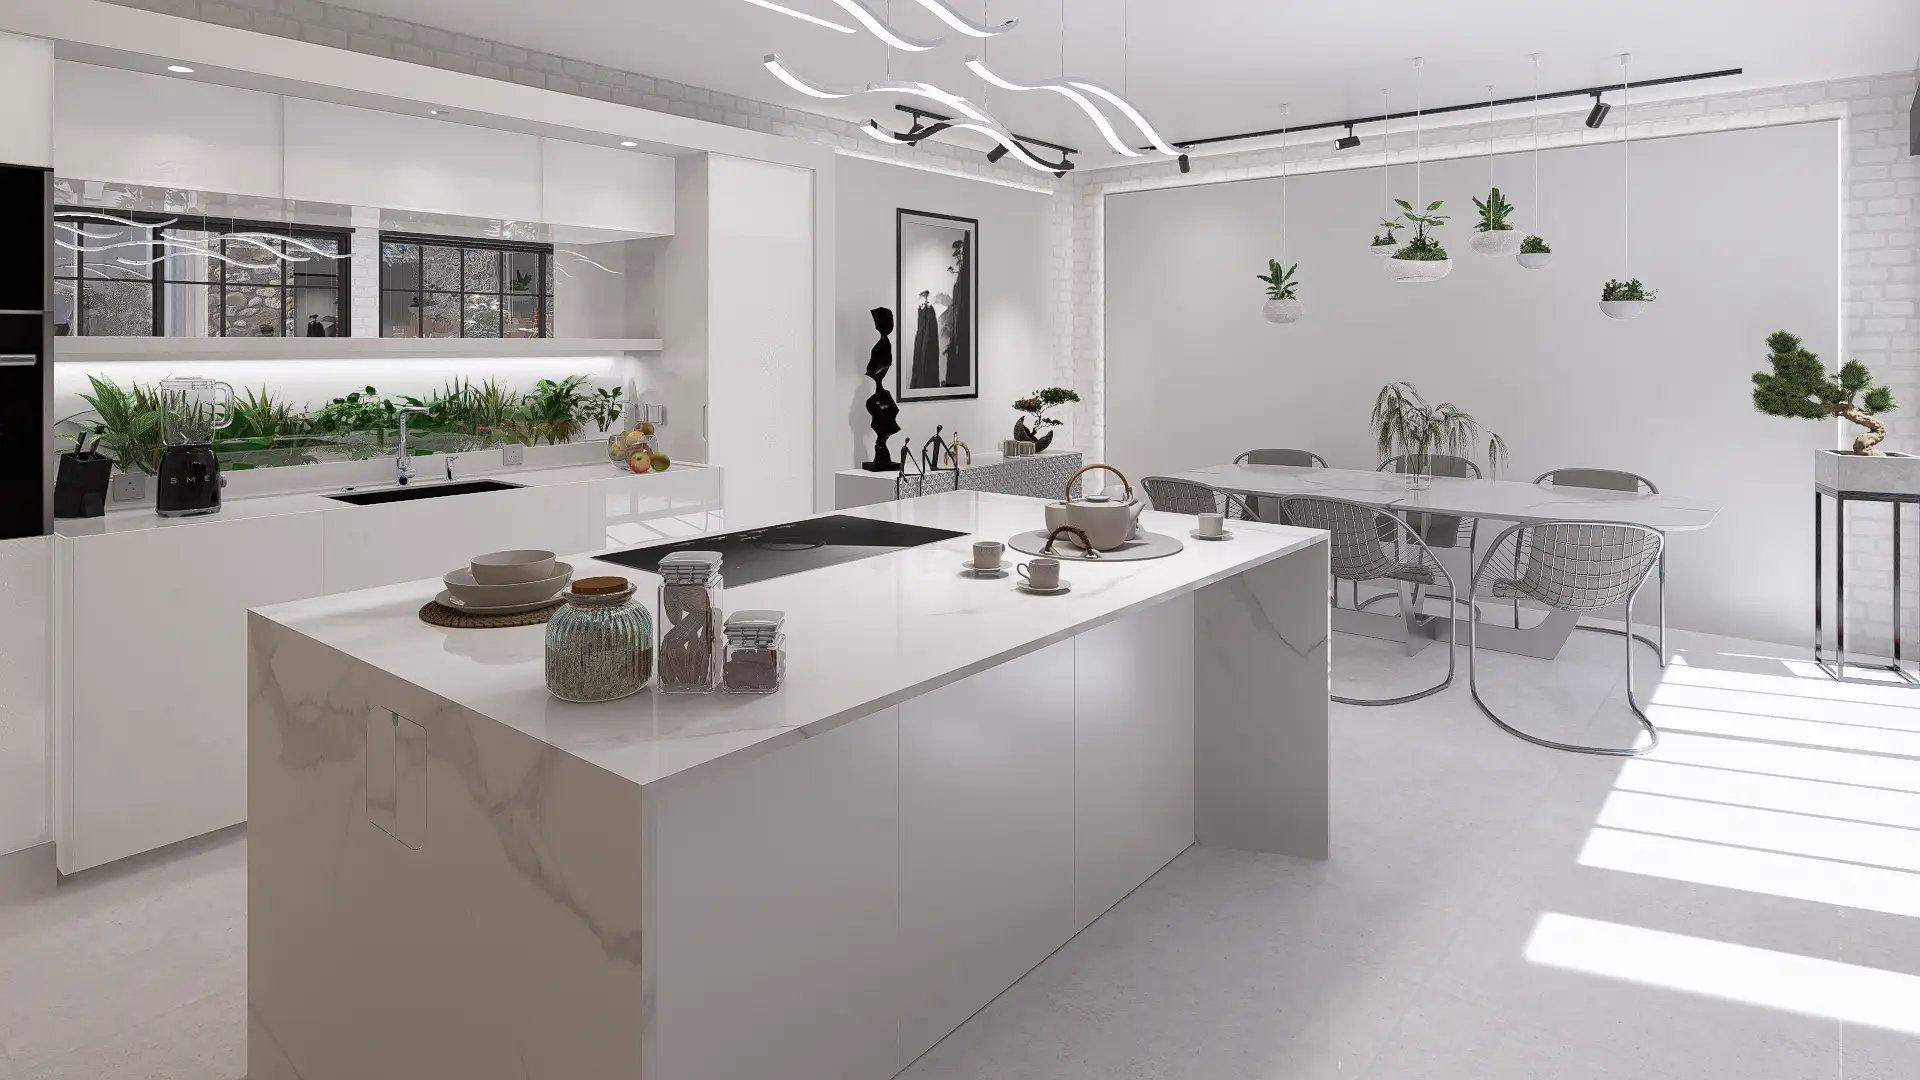 Architectes-interieur-images-3d-rendu-perspective-interieure-studio-l4m-projet-ED2A-maison-cuisine